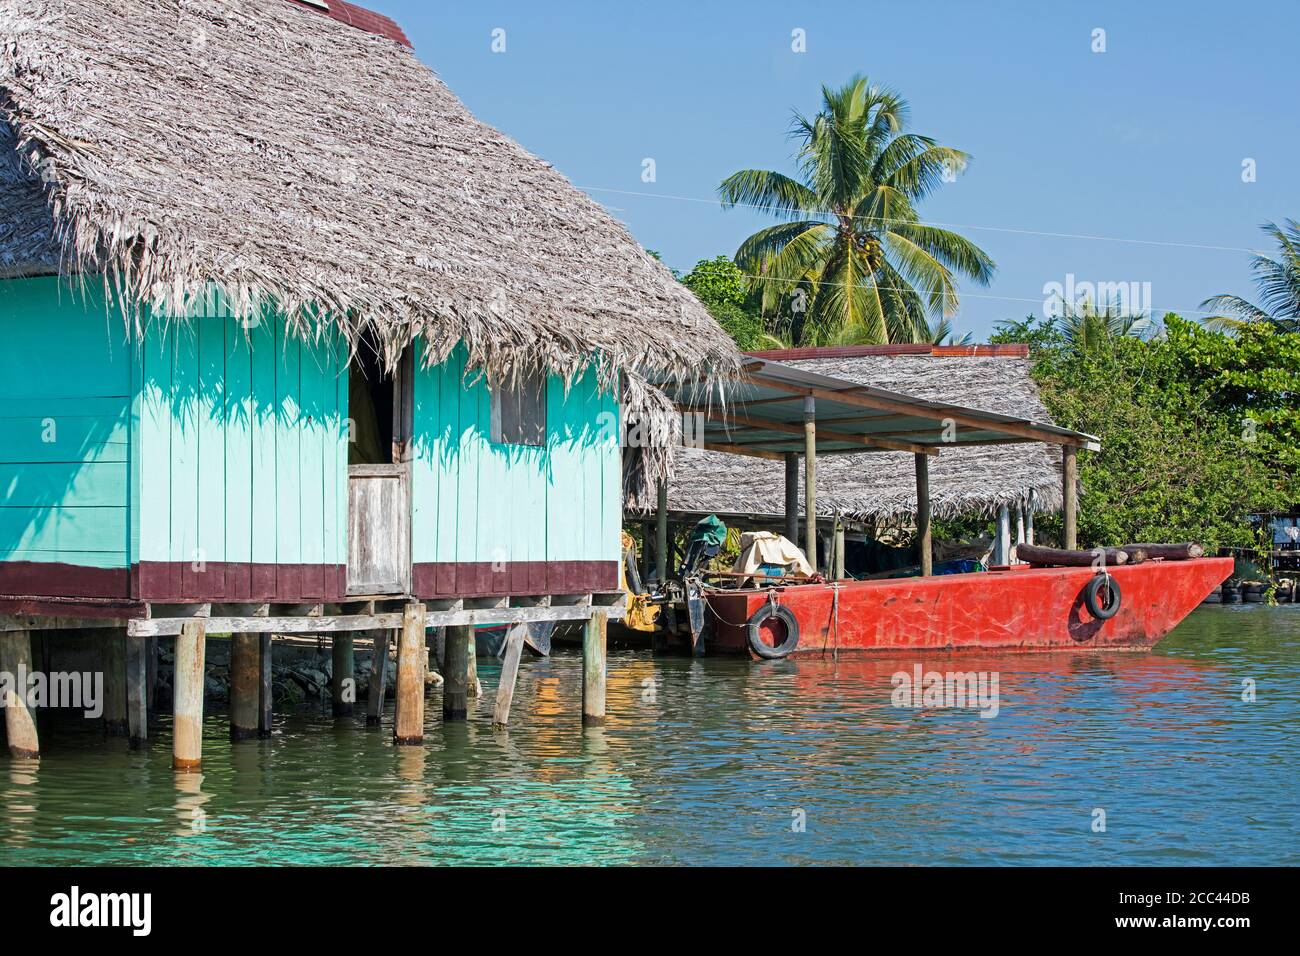 Bateau rouge et maison en bois sur pilotis avec toit de chaume sur la rivière Dulce / Rio Dulce, département d'Izabal, Guatemala, Amérique centrale Banque D'Images